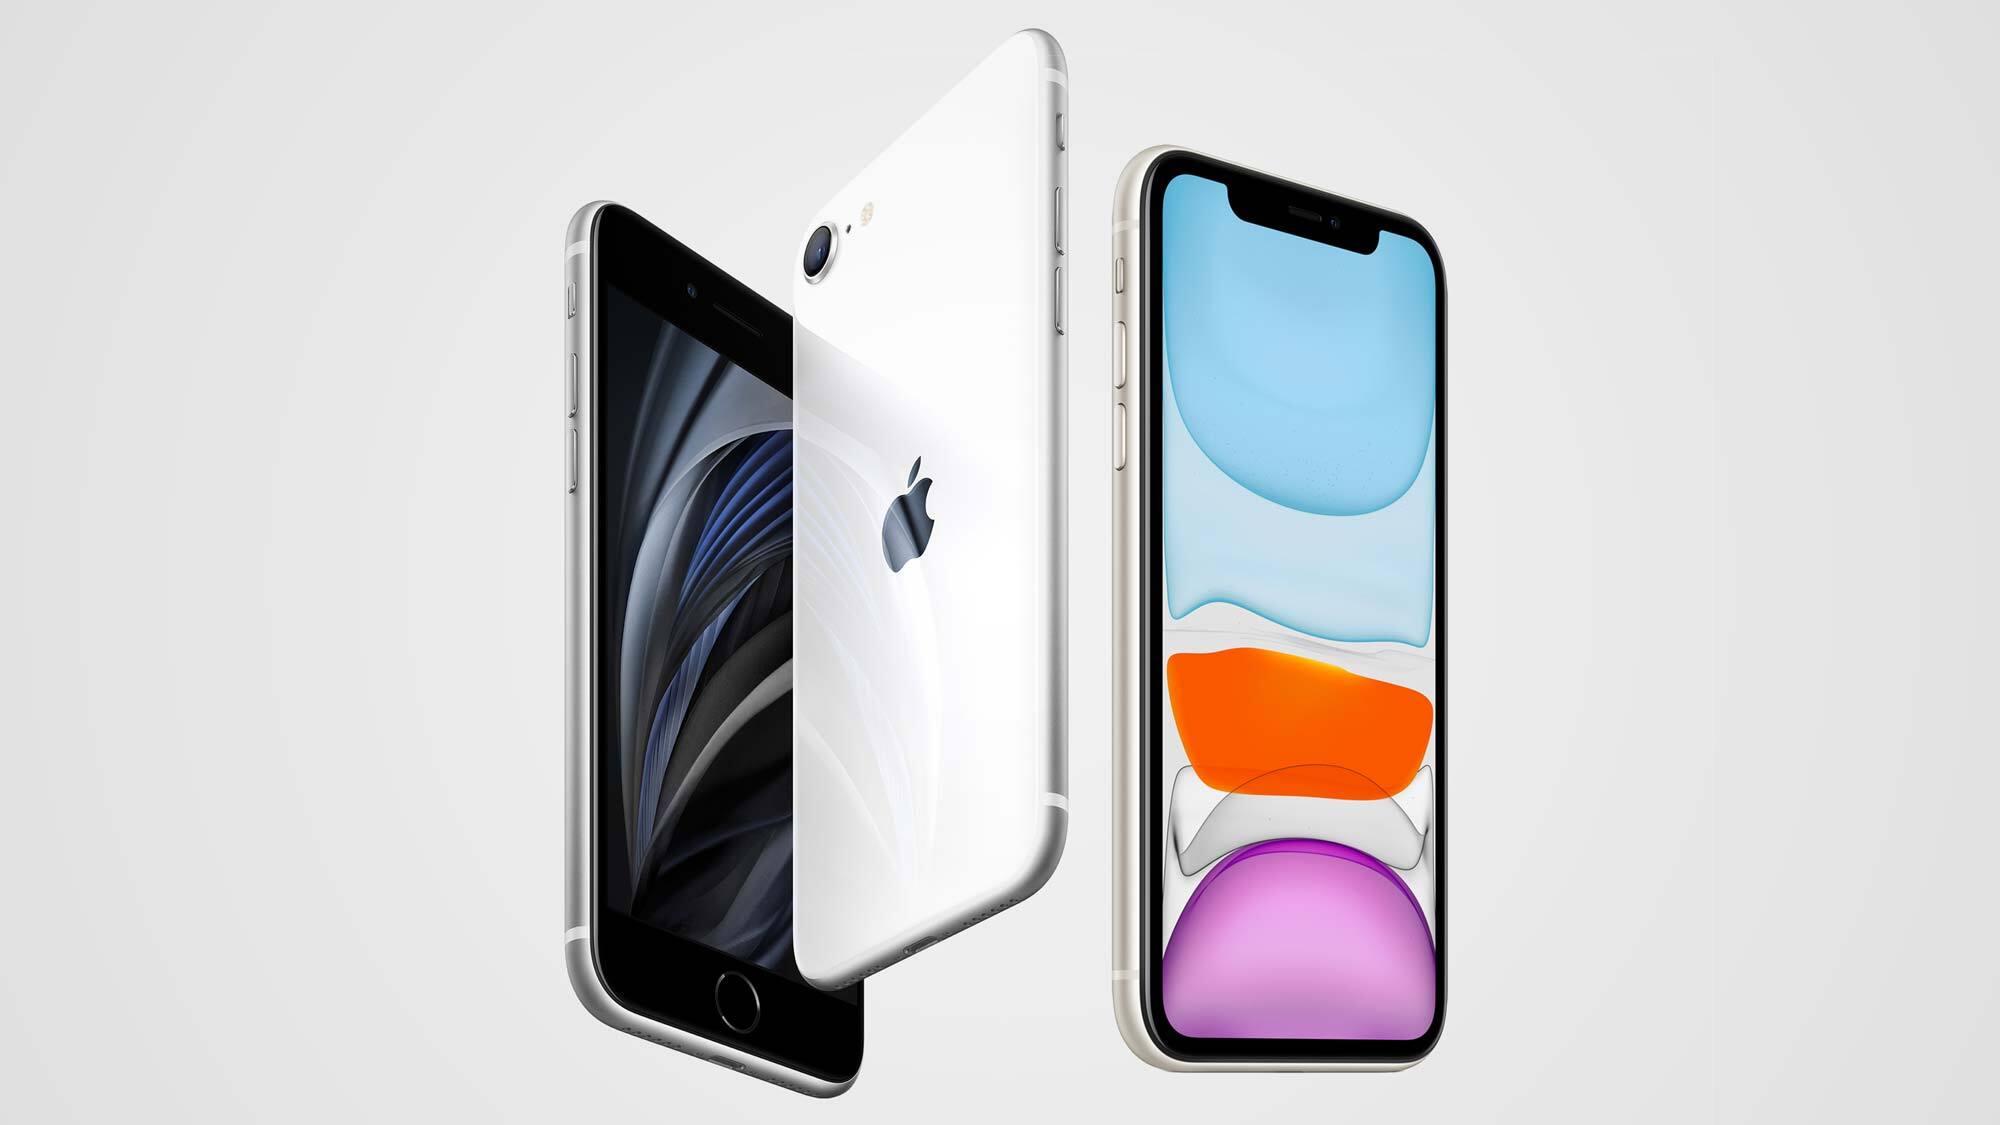 Bıyık Fırfır elbette  iPhone SE 2020 vs. iPhone 11: What's different? | Tom's Guide